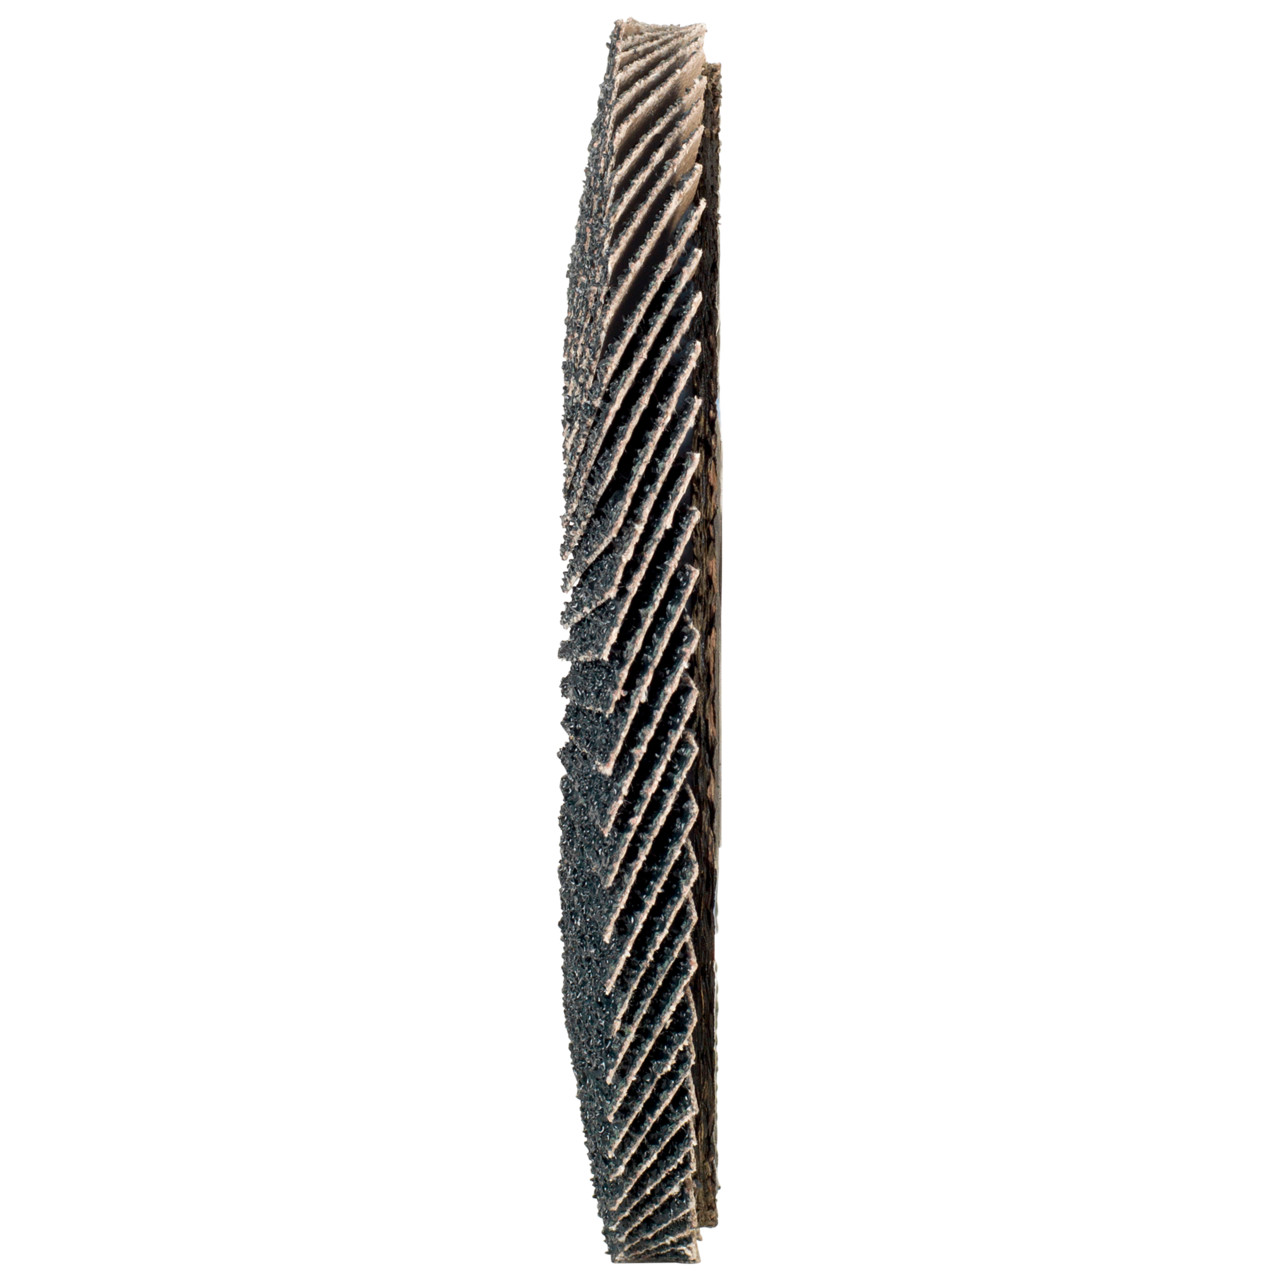 Tyrolit Arandela dentada DxH 150x22,2 2en1 para acero y acero inoxidable, P80, forma: 27A - versión con manivela (versión con cuerpo de soporte de fibra de vidrio), Art. 519214